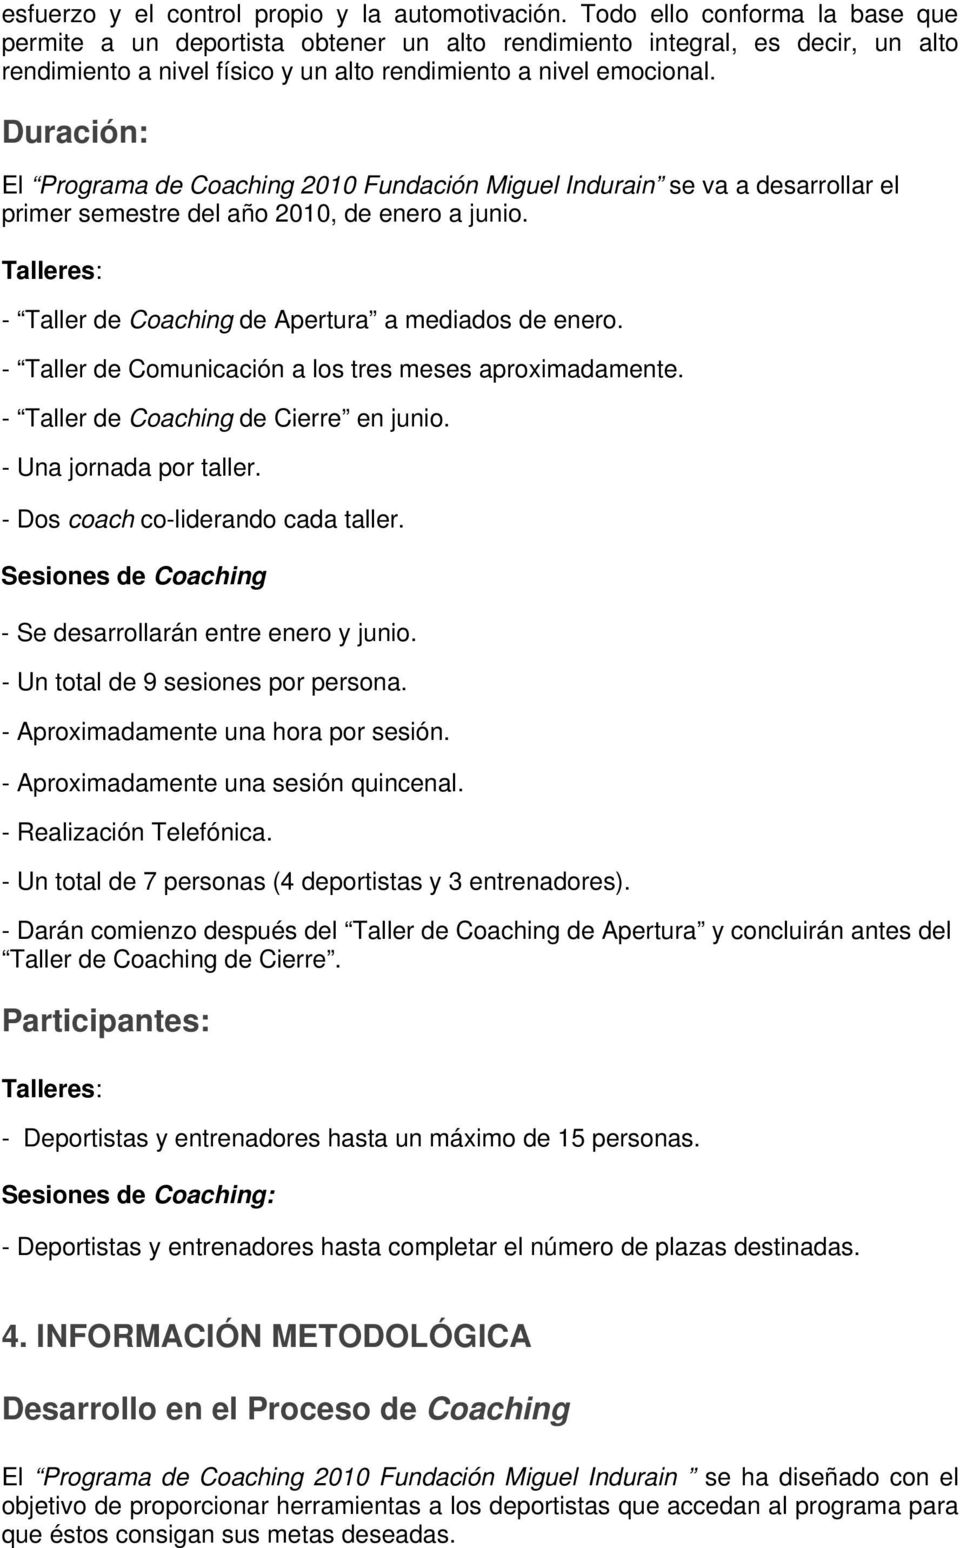 Duración: El Programa de Coaching 2010 Fundación Miguel Indurain se va a desarrollar el primer semestre del año 2010, de enero a junio. Talleres: - Taller de Coaching de Apertura a mediados de enero.